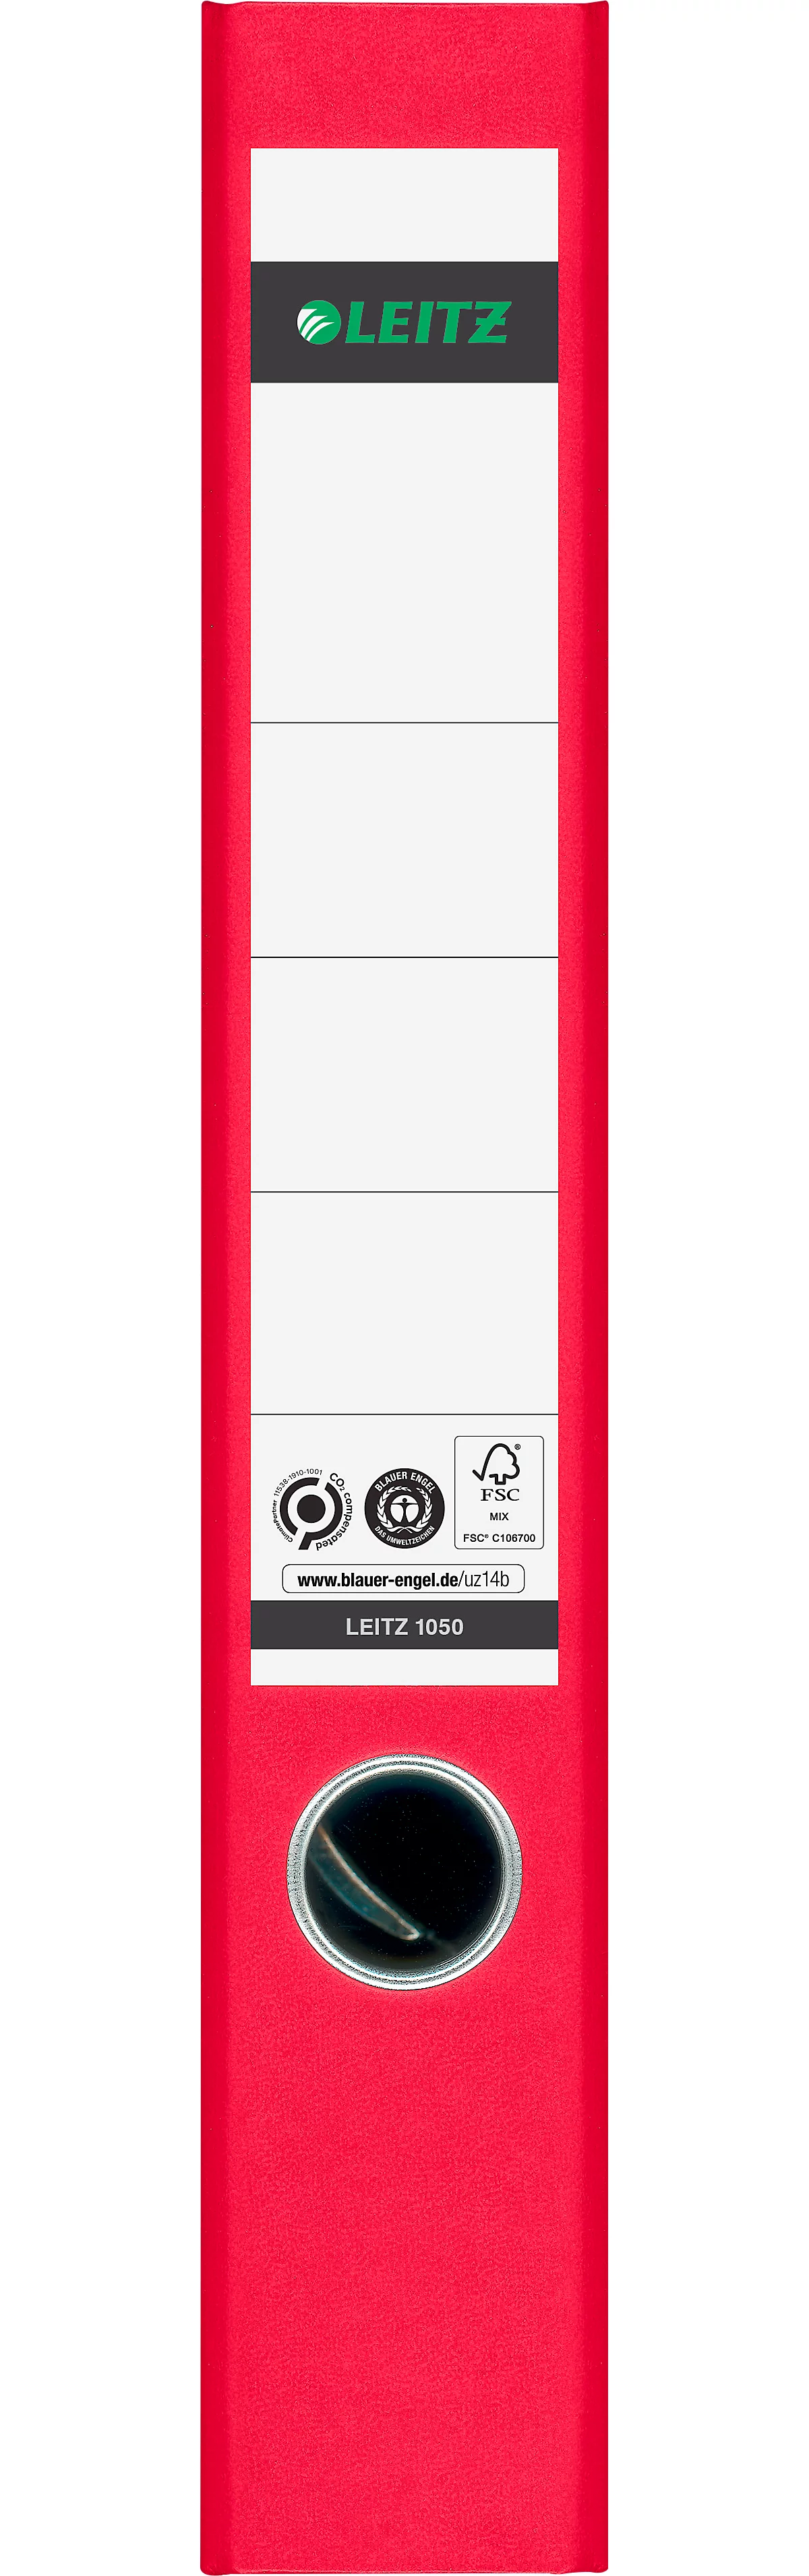 Carpeta LEITZ®1050, DIN A4, ancho de lomo 52 mm, agujero para los dedos, etiqueta de lomo pegada, clima neutro, cartón duro, 20 unidades, rojo